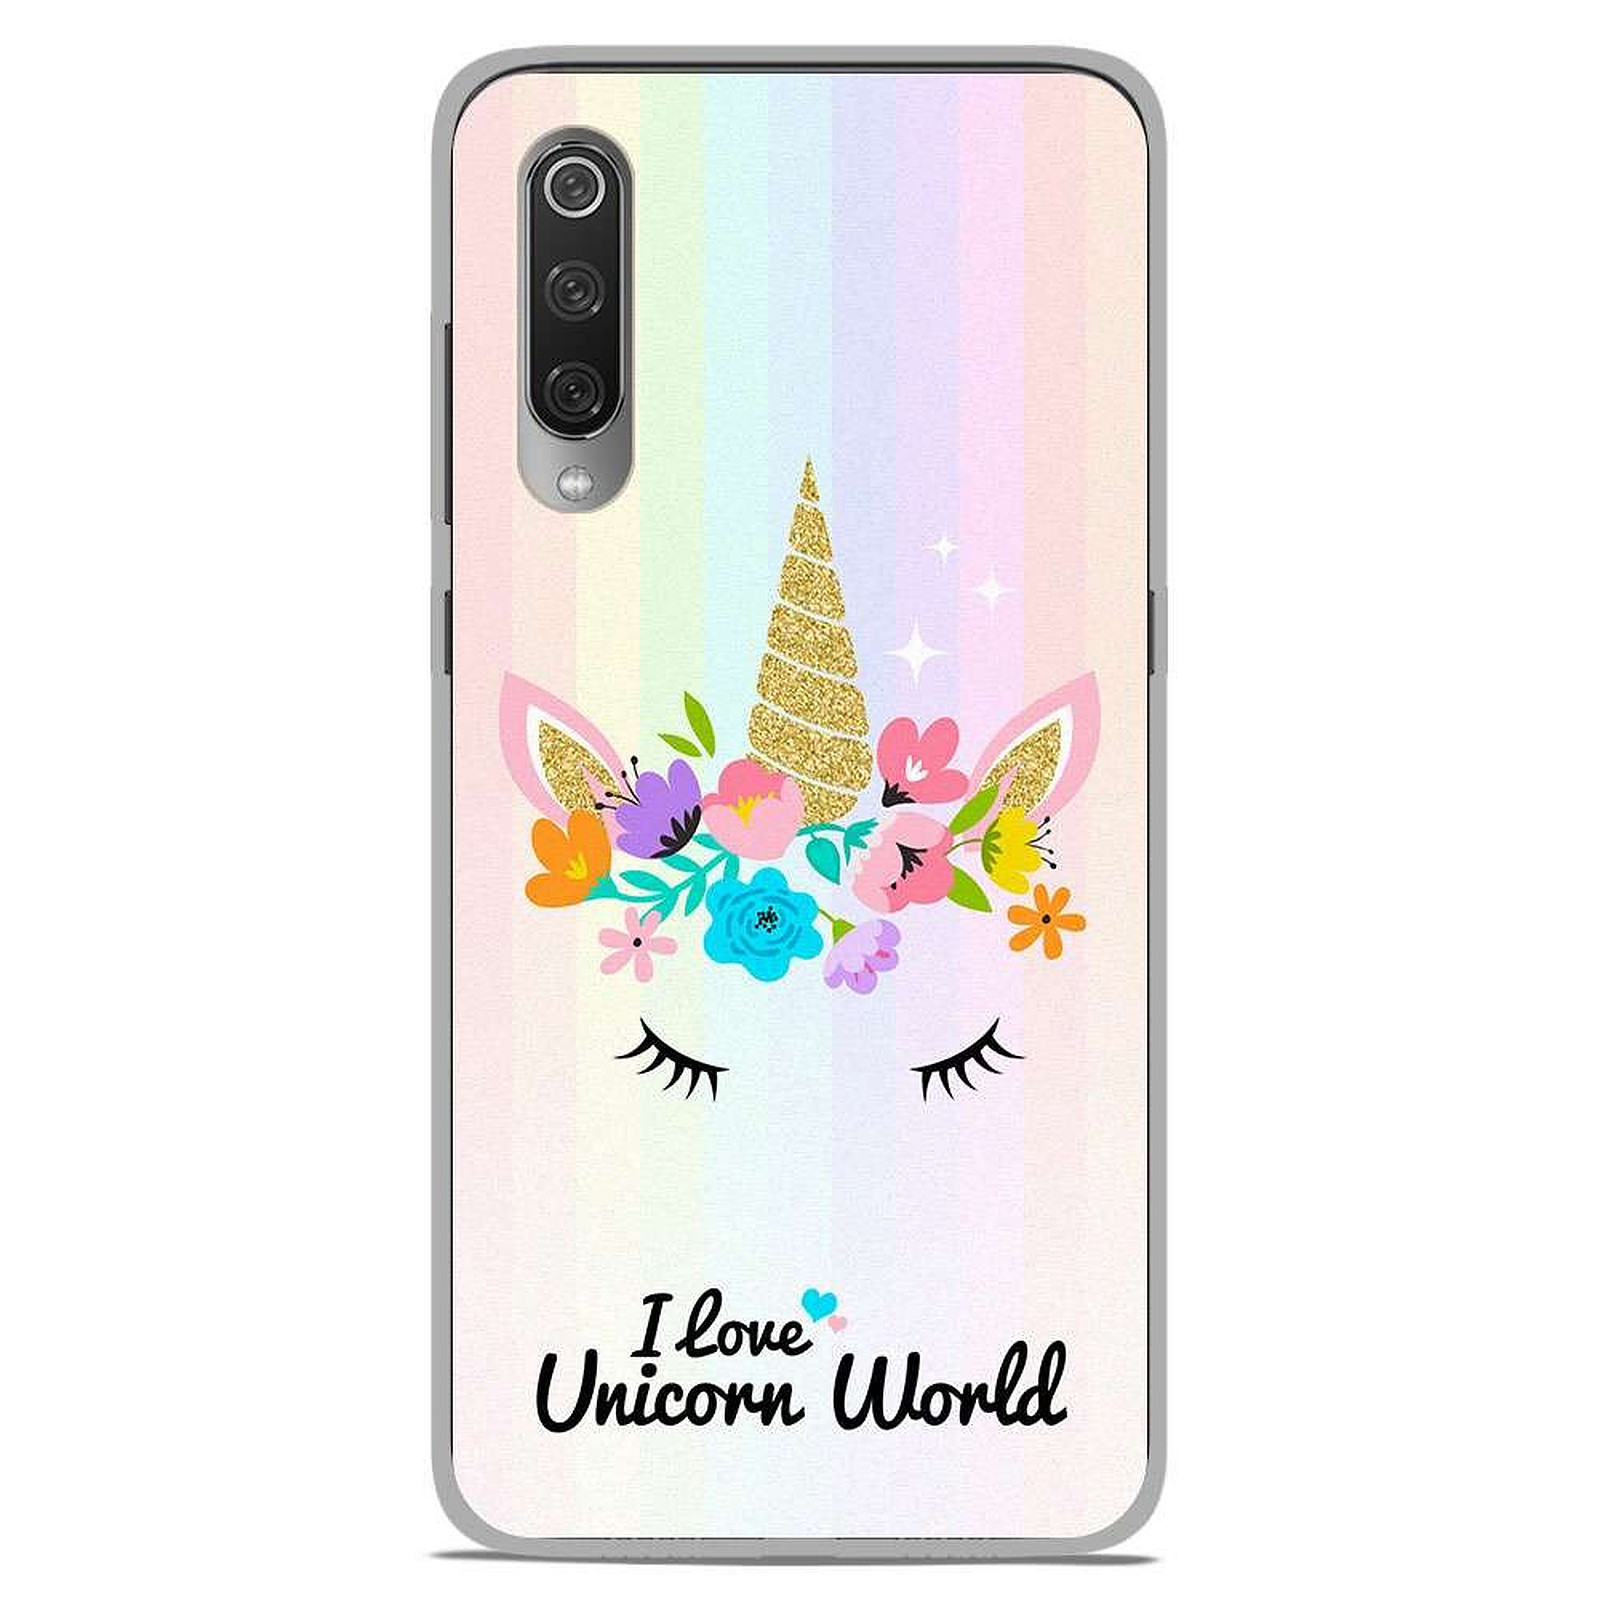 1001 Coques Coque silicone gel Xiaomi Mi 9 / Mi 9 Pro motif Unicorn World - Coque telephone 1001Coques